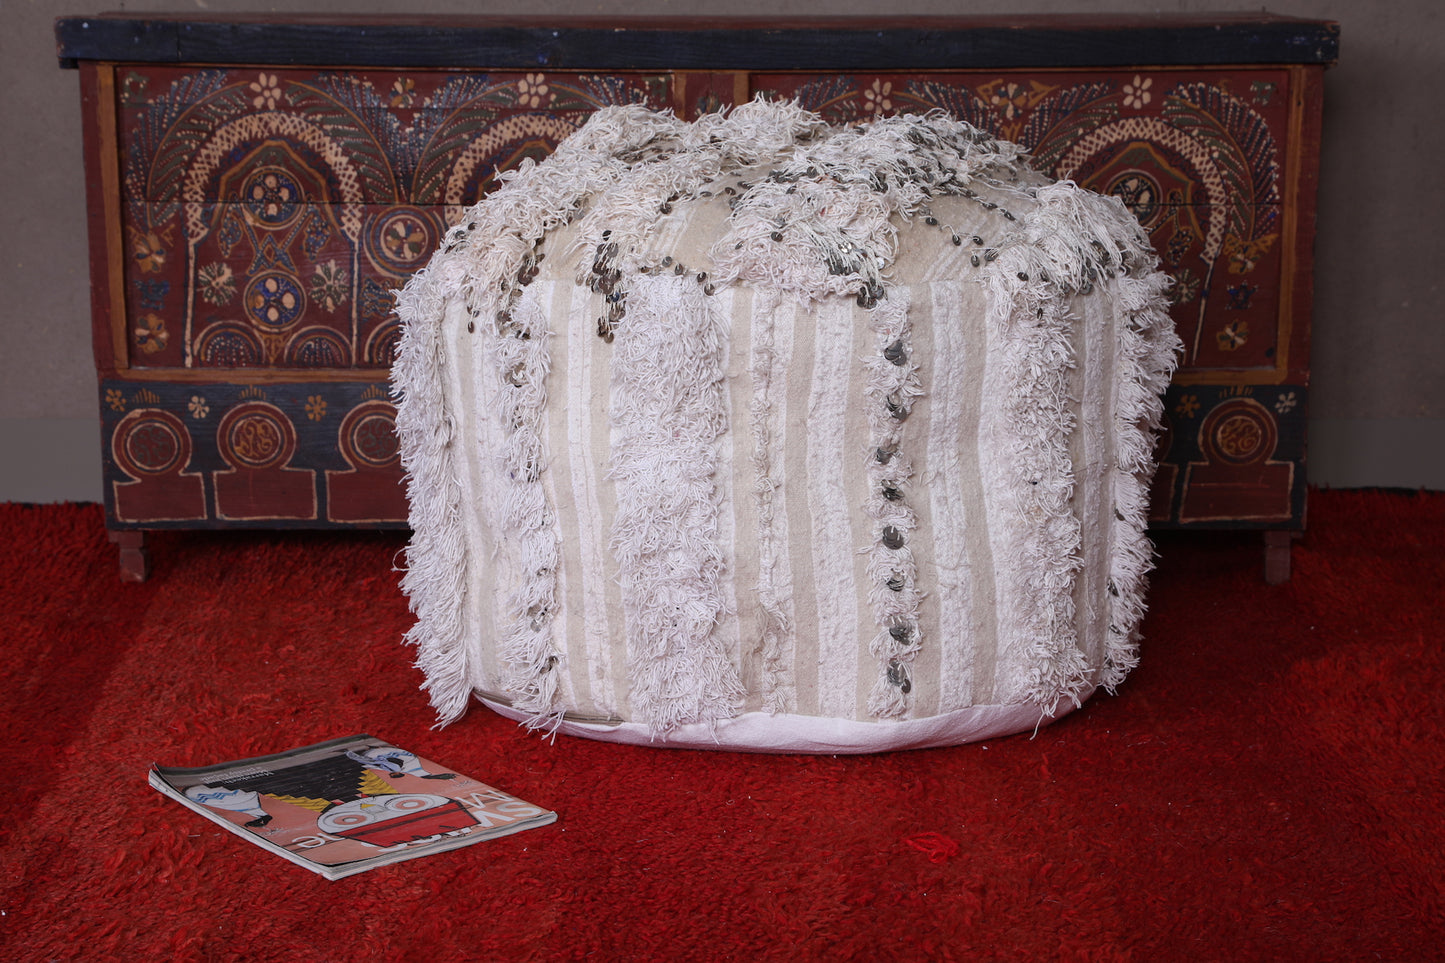 Round Handwoven berber Moroccan Kilim pouf